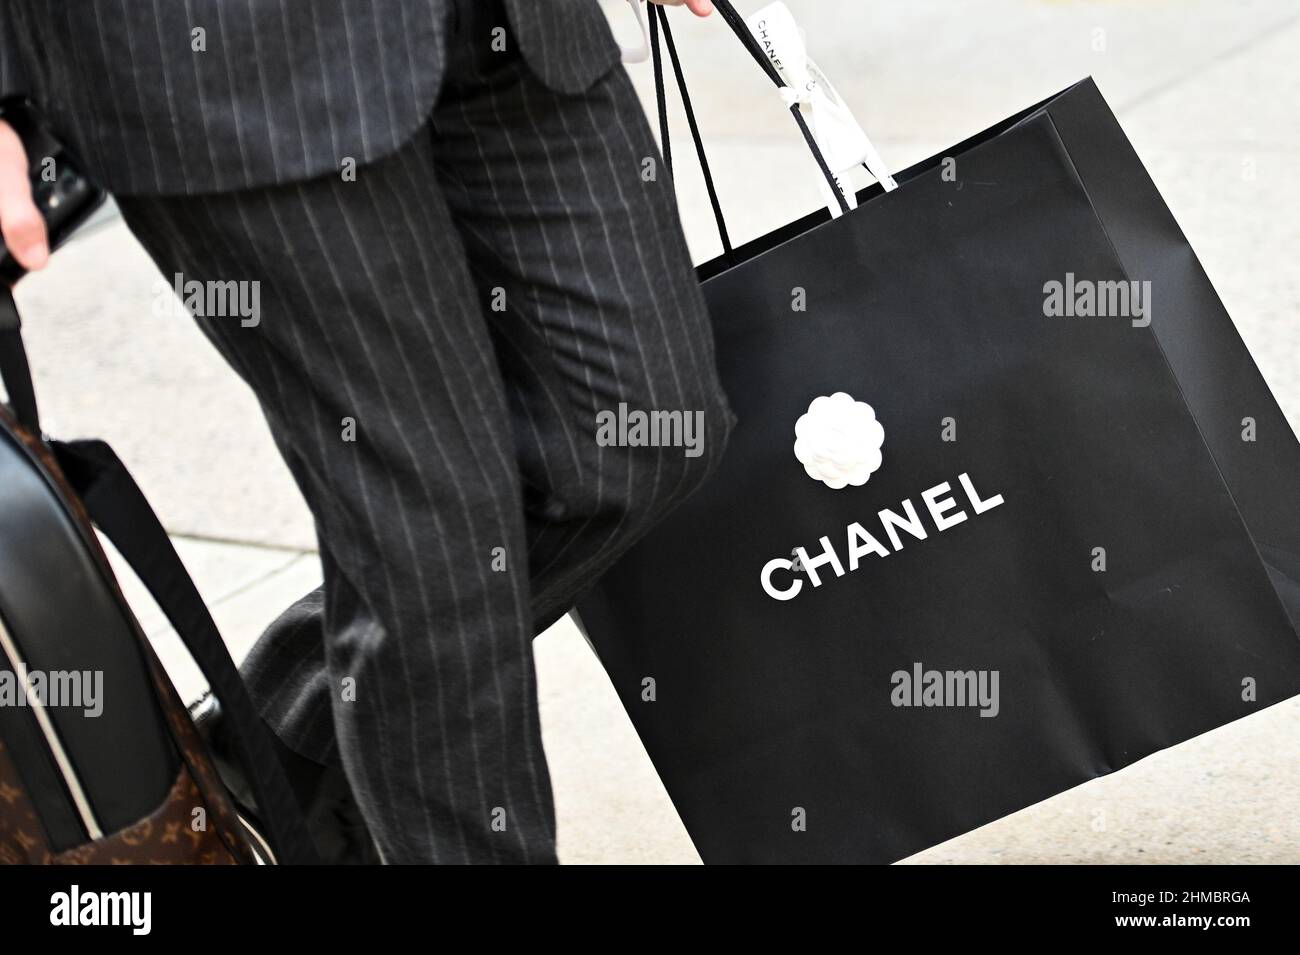 Bag Handbag Chanel Fashion Stockfotos und -bilder Kaufen - Alamy